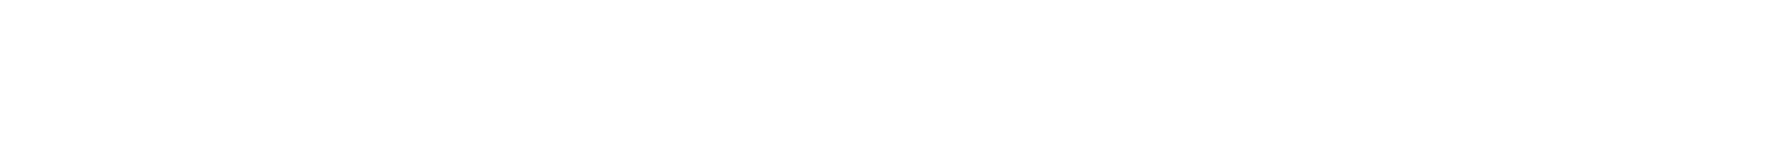 marsh mma logo